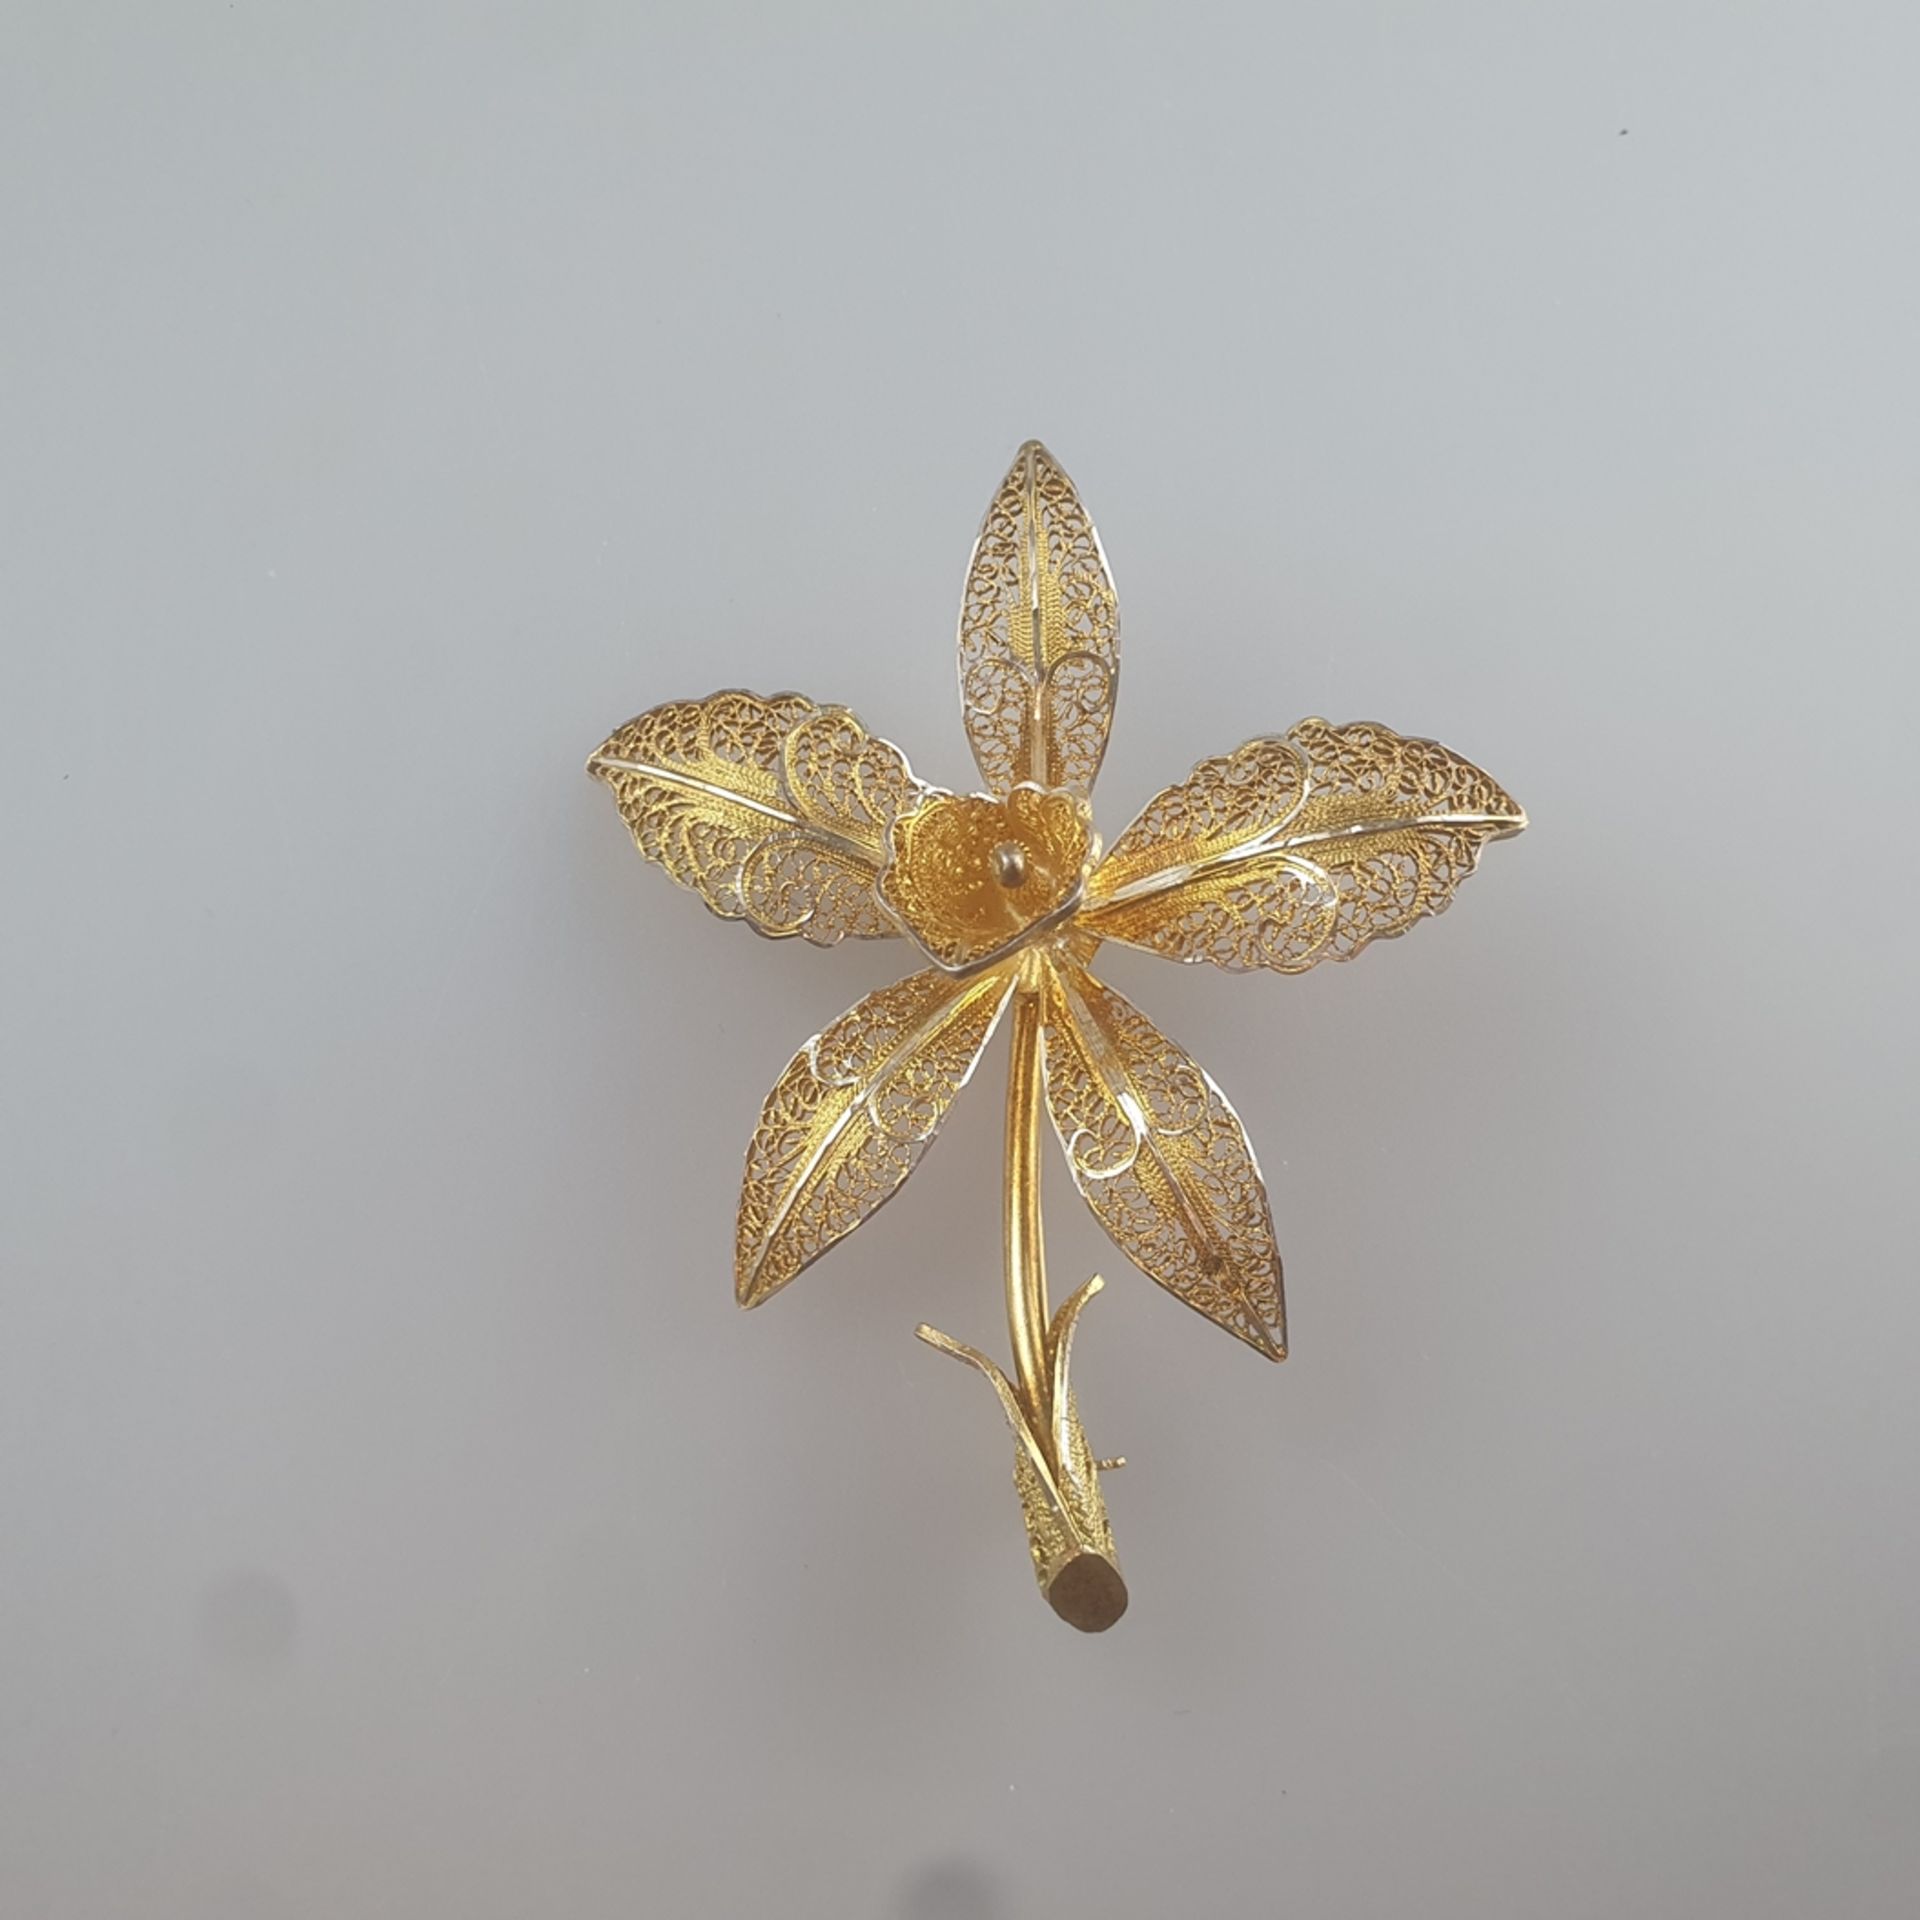 Blütenbrosche - Filigranarbeit aus Silberdraht, vergoldet, gesicherte Nadelung, Maße 6,9 x 5,5 cm,  - Bild 3 aus 4